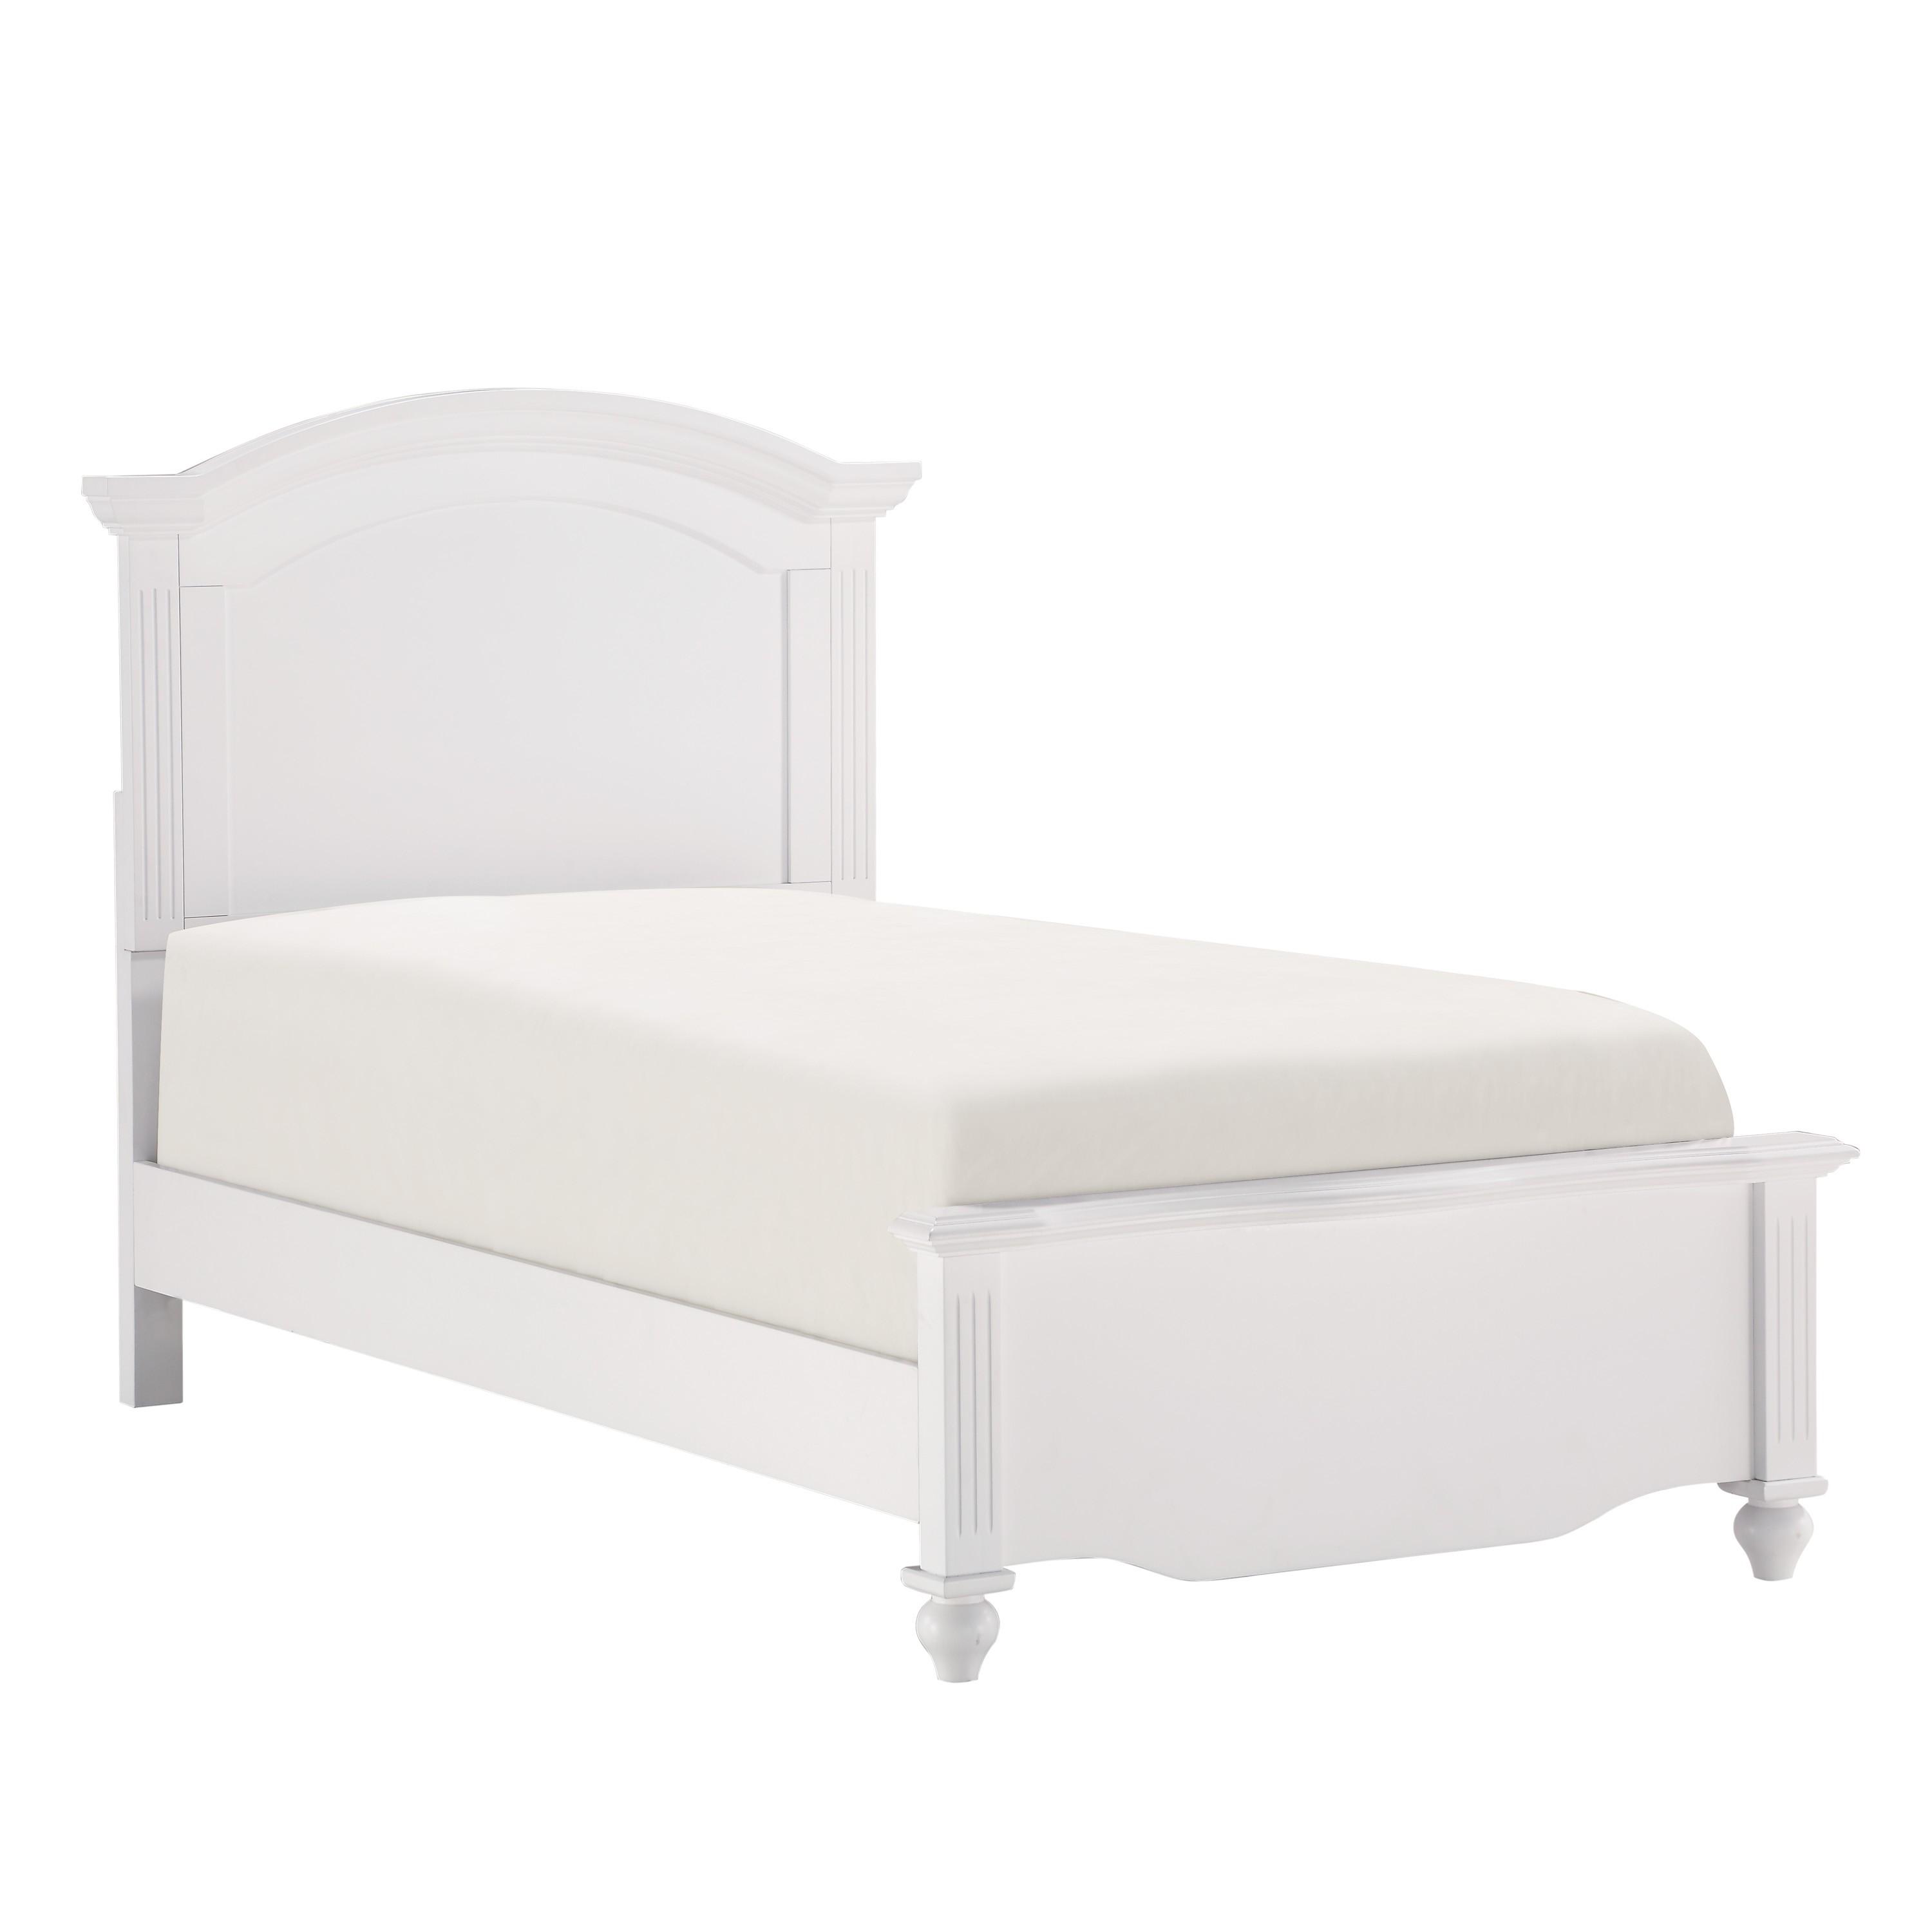 

    
Transitional White Wood Full Bedroom Set 5pcs Homelegance 2058WHF-1* Meghan
